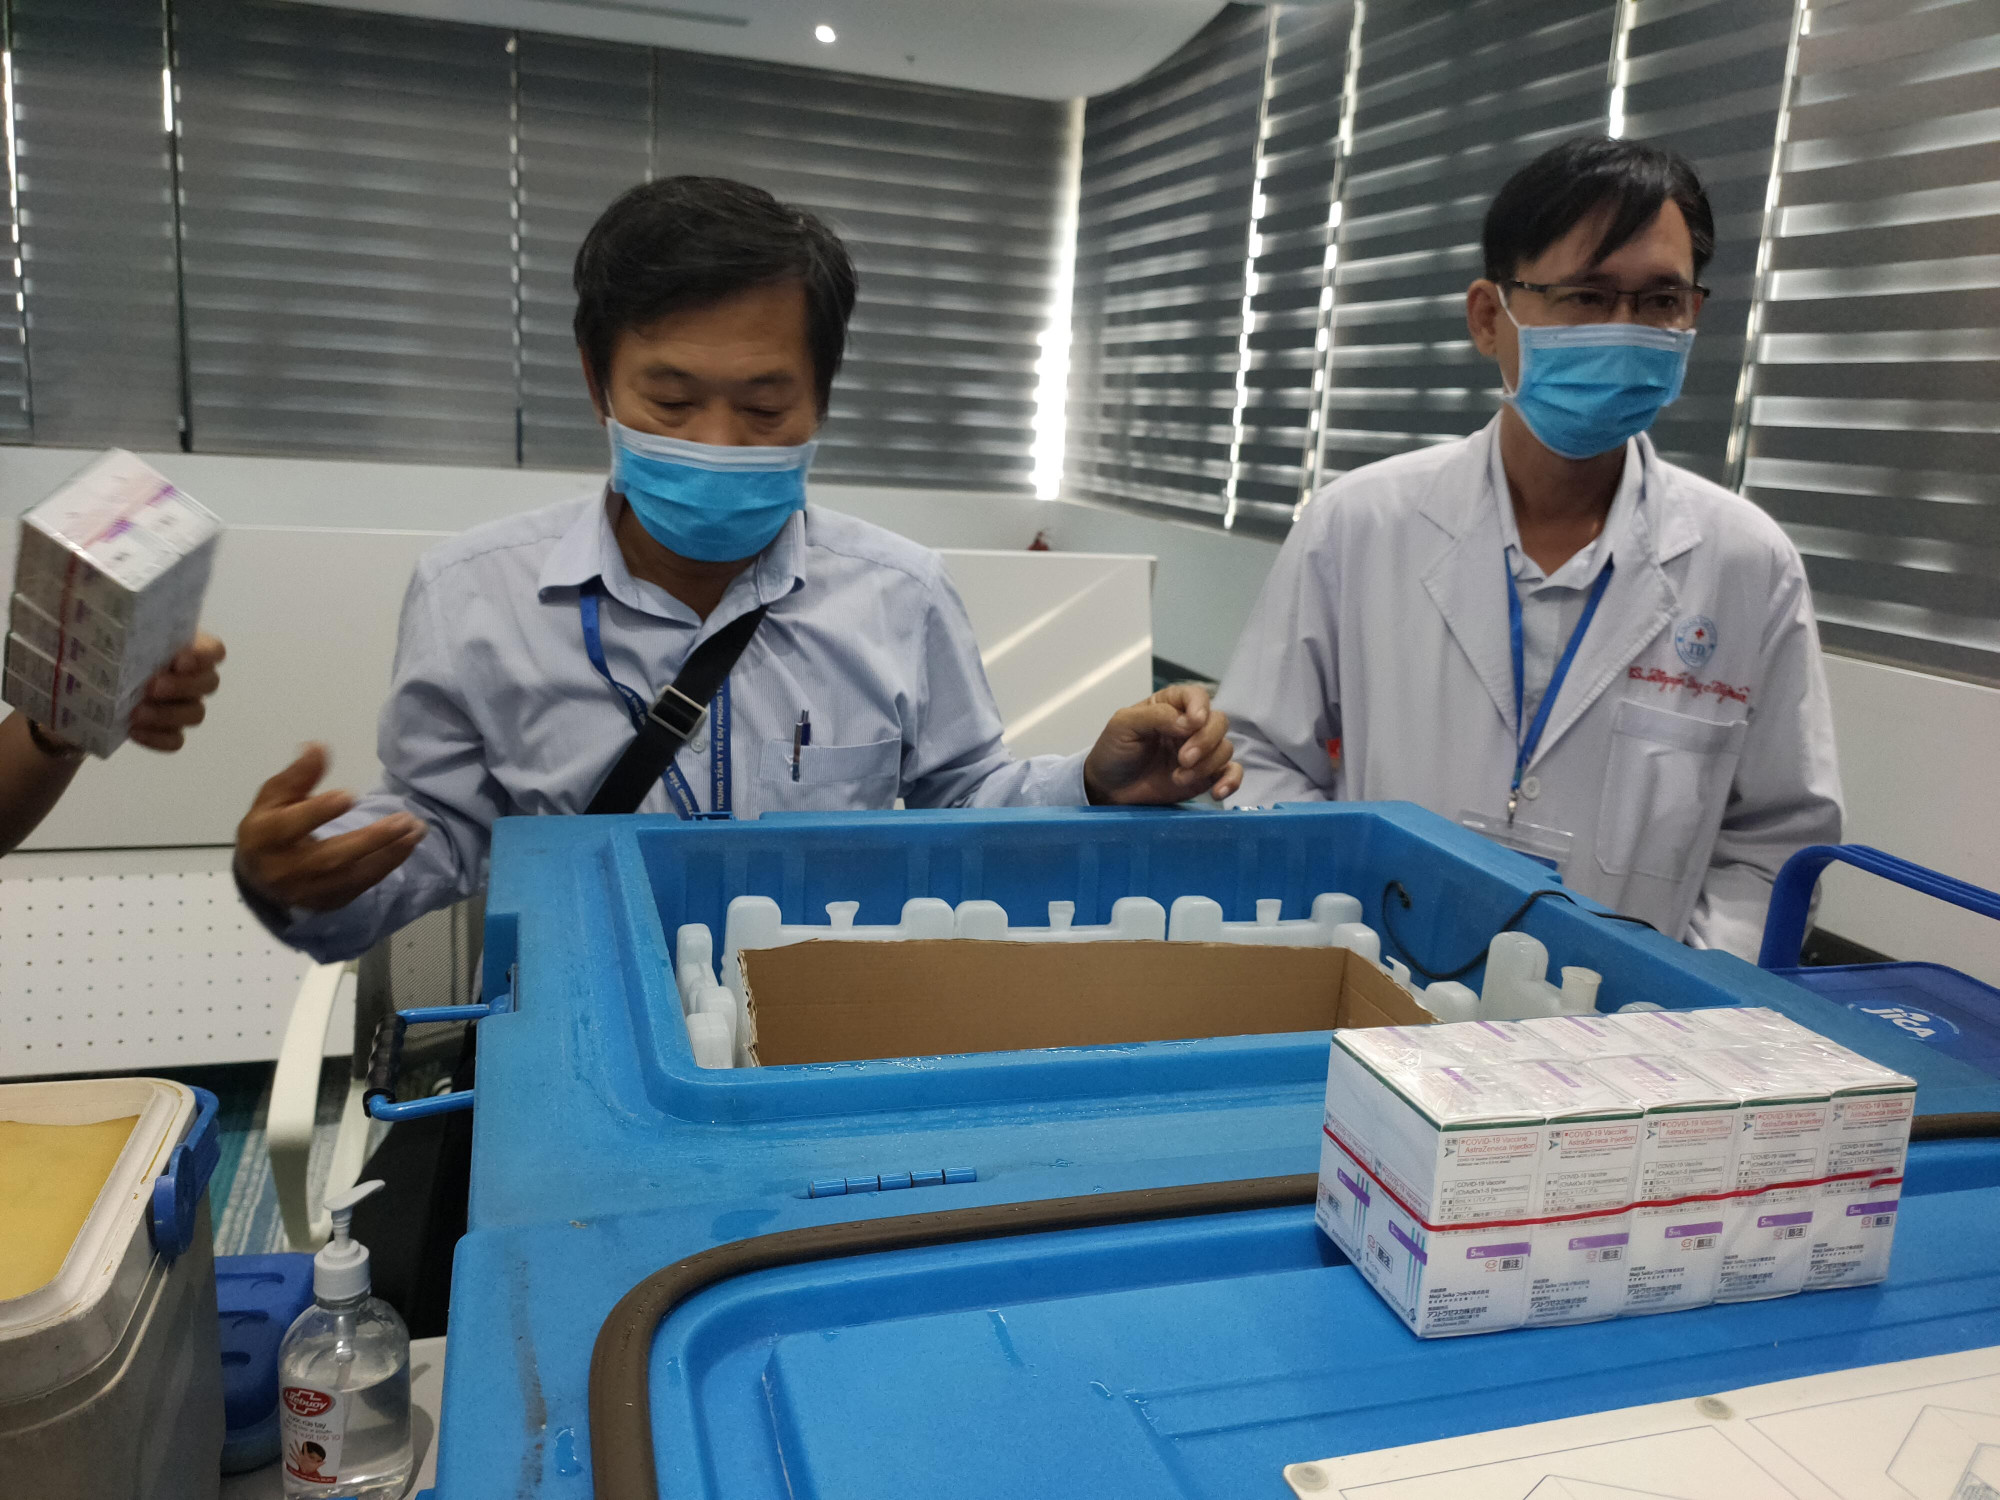 Hộp lạnh đựng vắc xin AstraZeneca trong chiến dịch tiêm chủng hơn 800.000 người tại TPHCM hồi tháng 6/2021. Ảnh: Hiếu Nguyễn